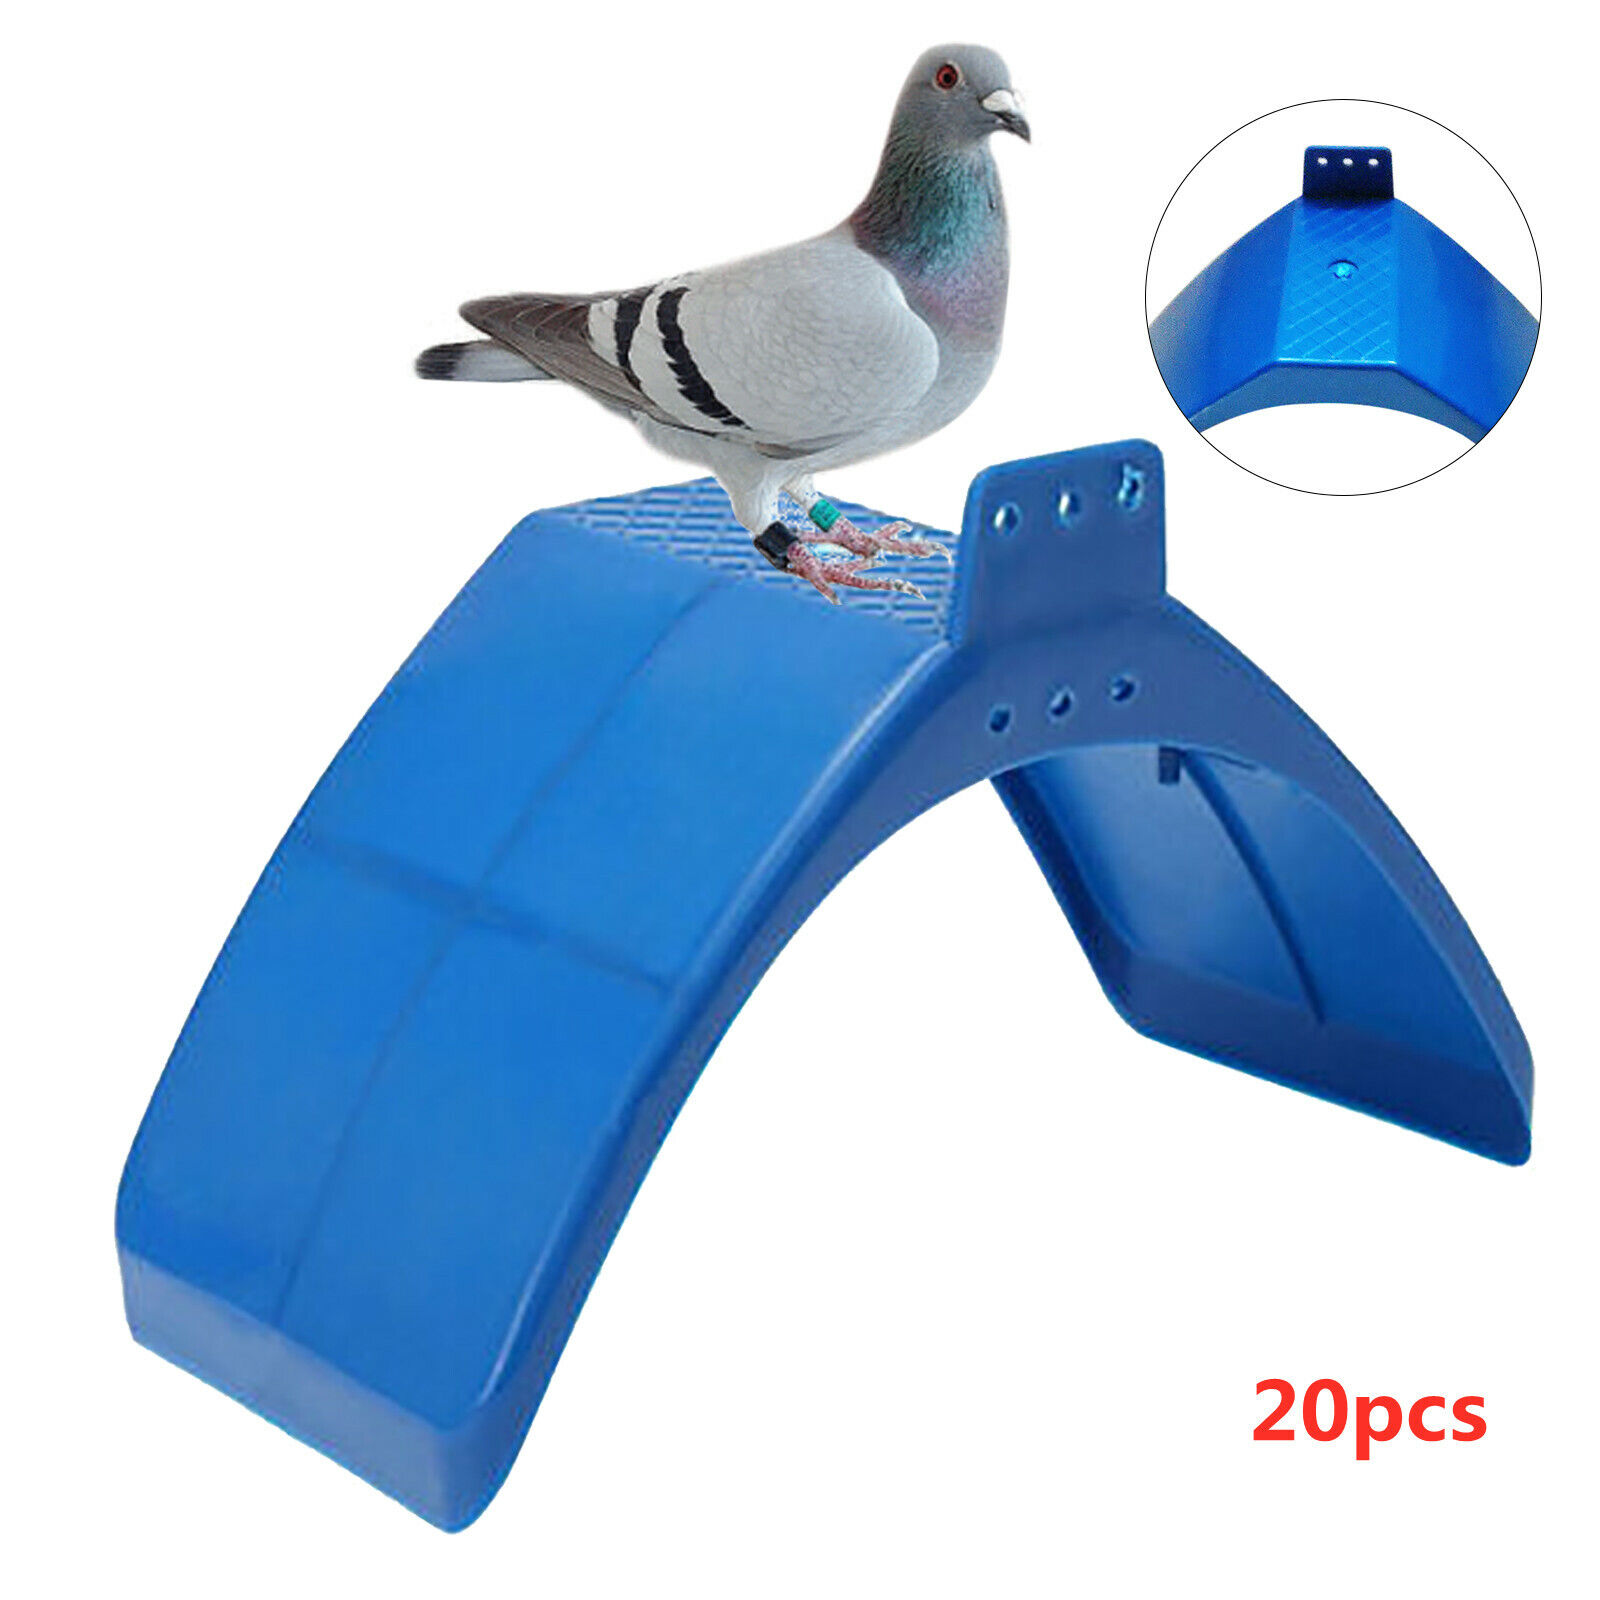 20pcs Pigeon Dove Rest Frame Pet Birds Perches Parrot Rest Arched Stand Blue Unbranded - фотография #4